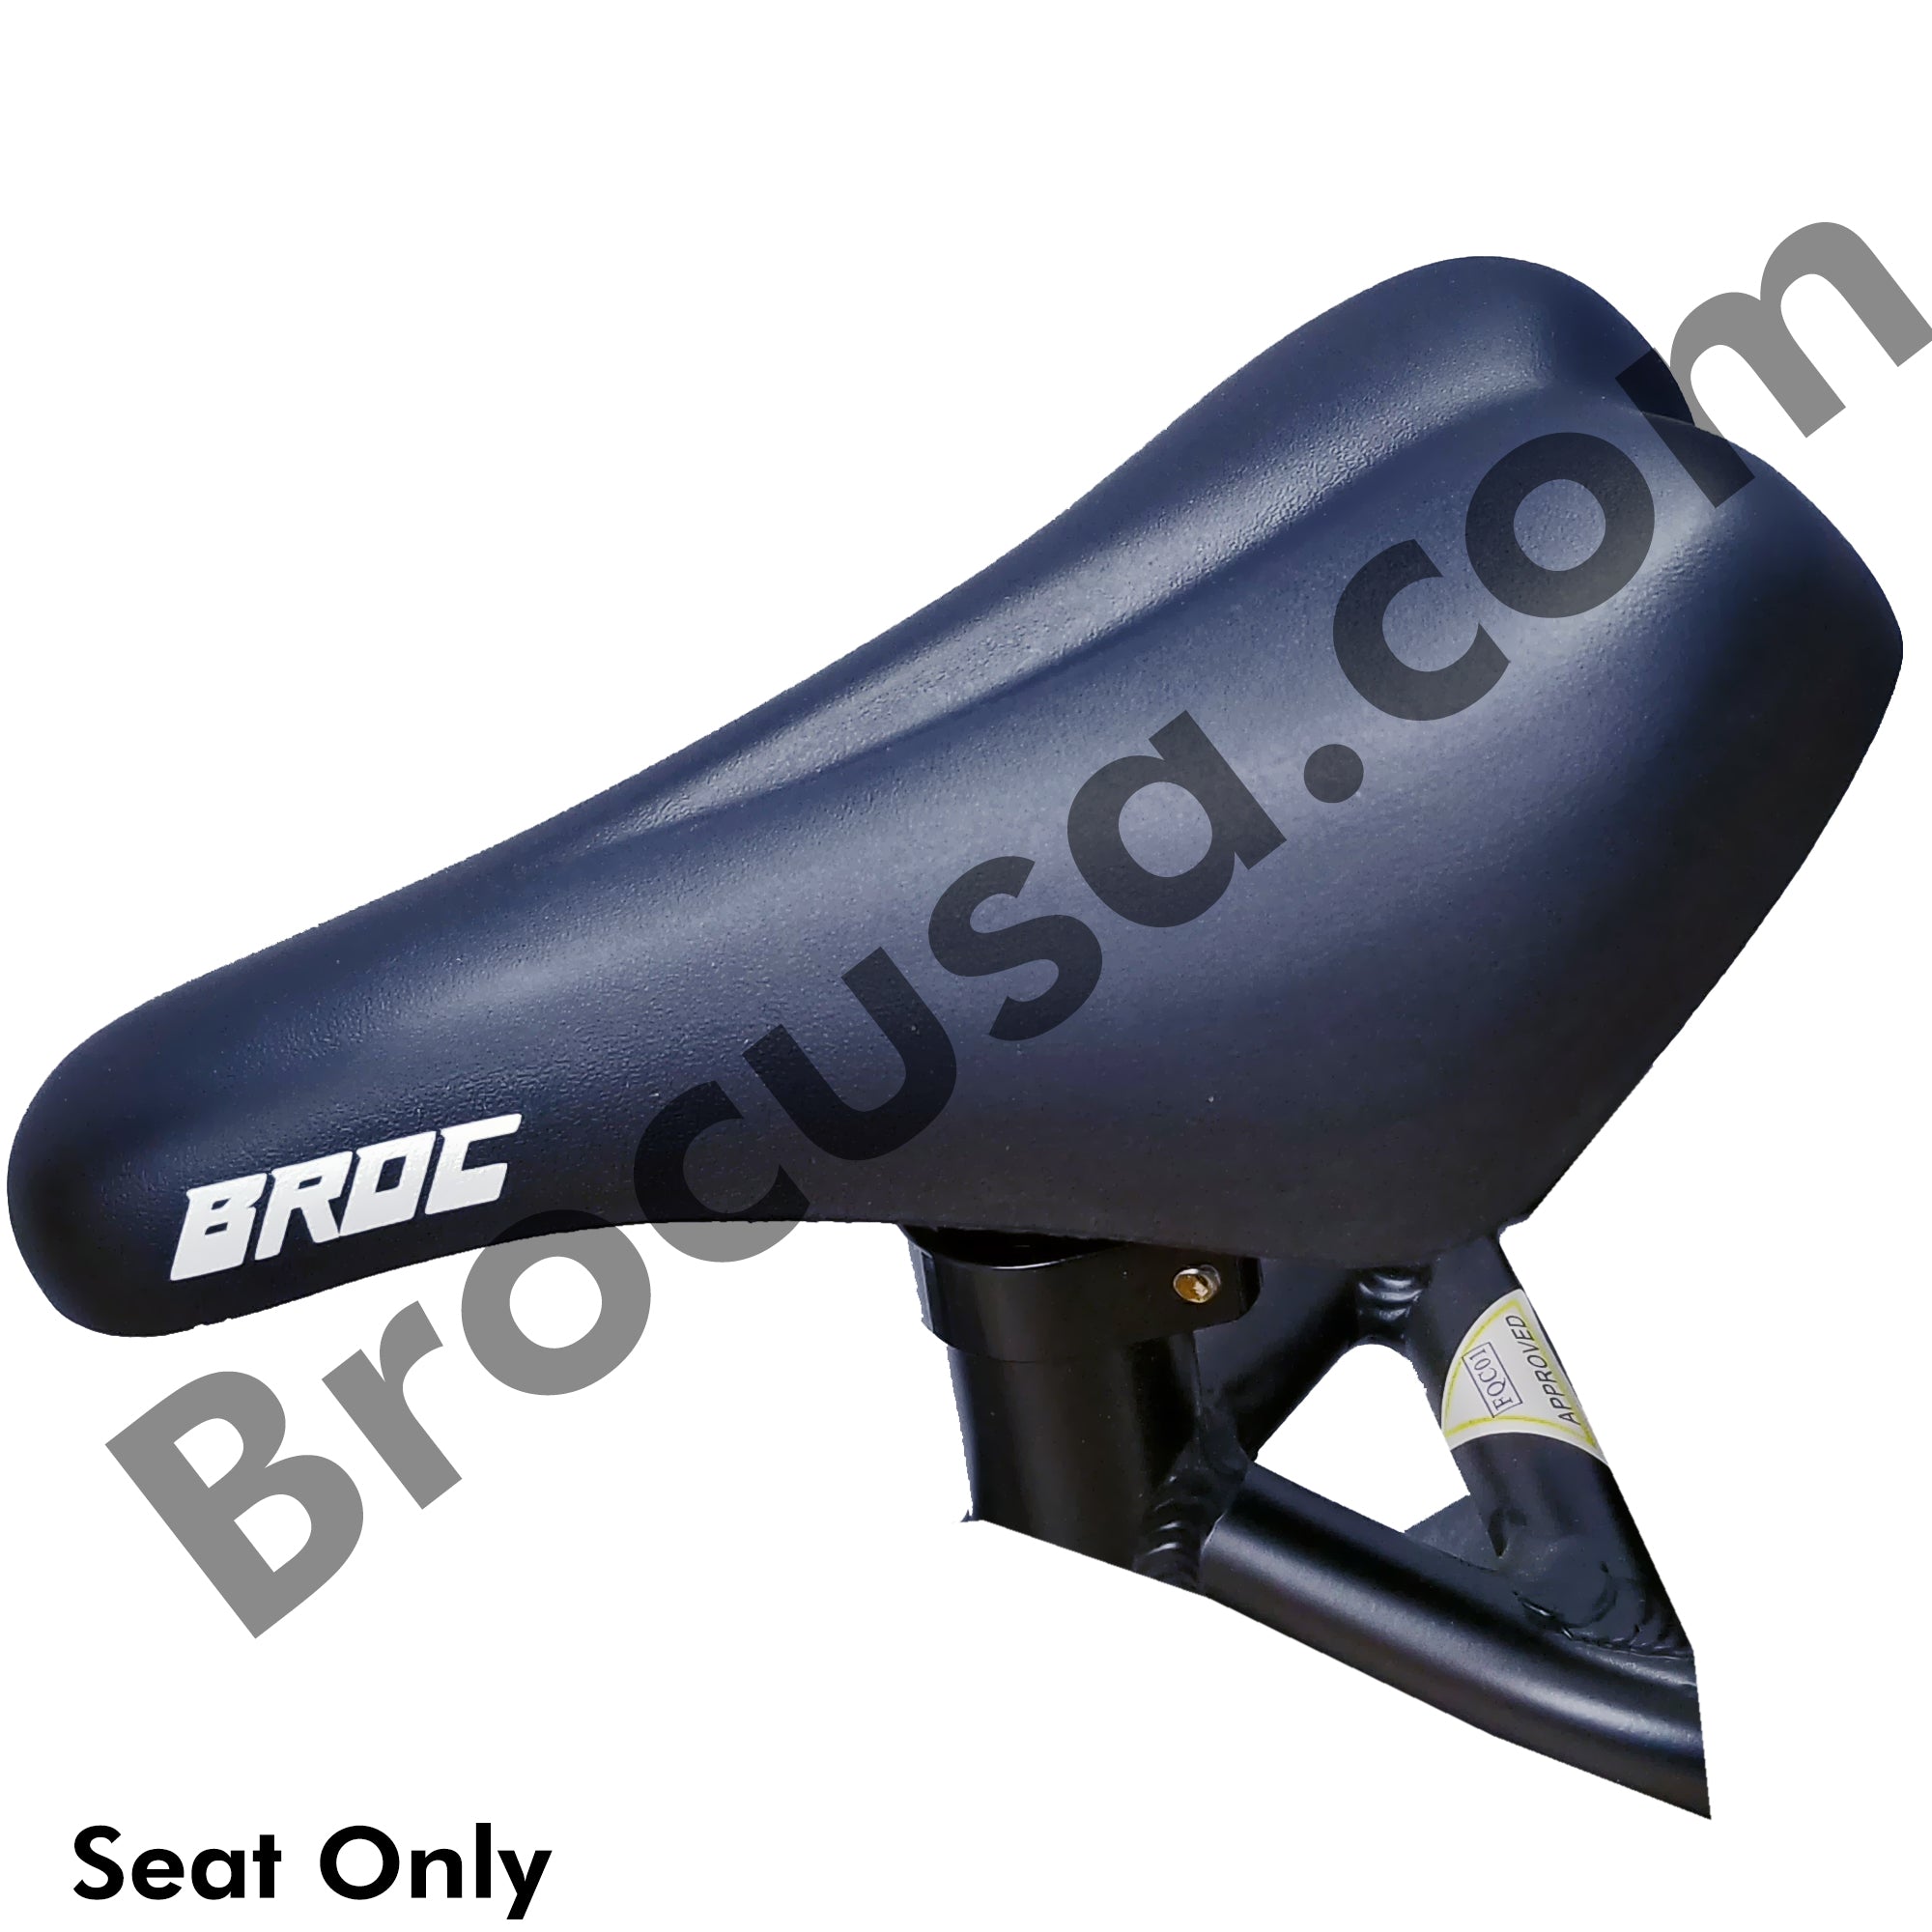 BROCUSA Balance e-bike 12"-16" Seat OEM Replacement | Parts